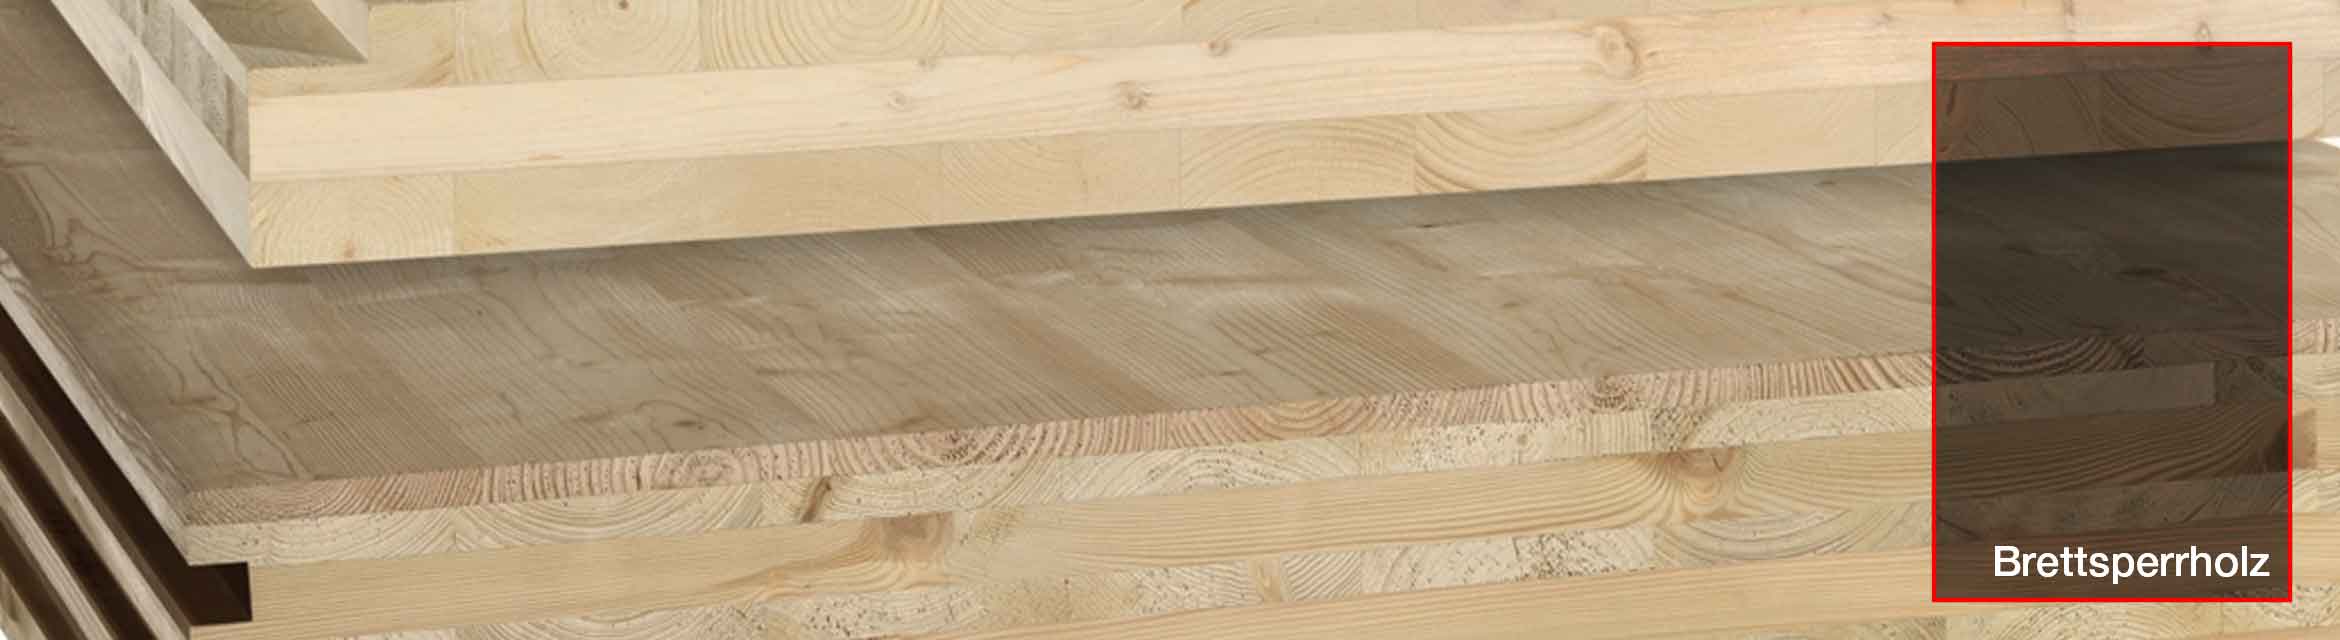 Brettsperrholz, Laminattragwerke und Sandwichtragwerke aus Holz in der Baustatik